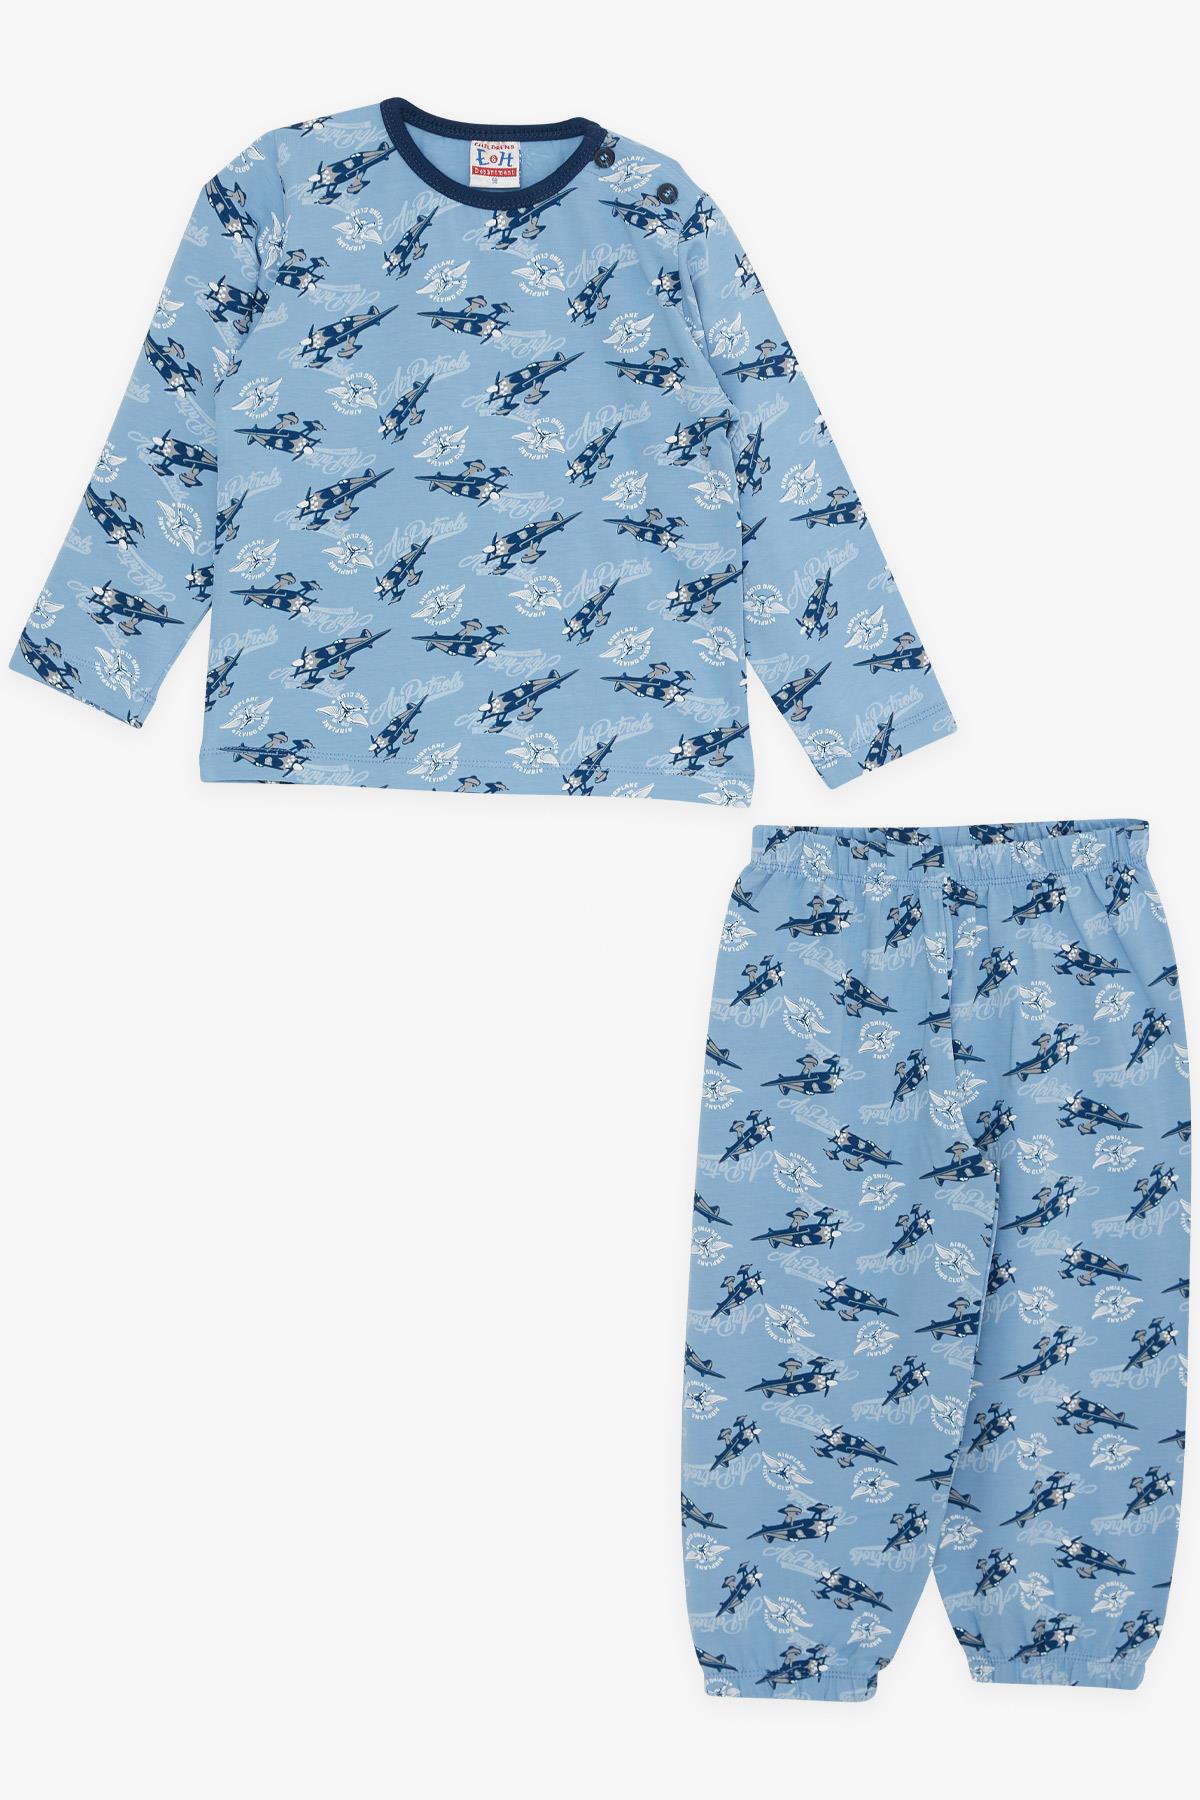 Erkek Bebek Pijama Takımı Uçak Desenli Mavi 9 Ay-2 Yaş - Yumuşak Kumaşlı  Çocuk Pijamaları | Breeze